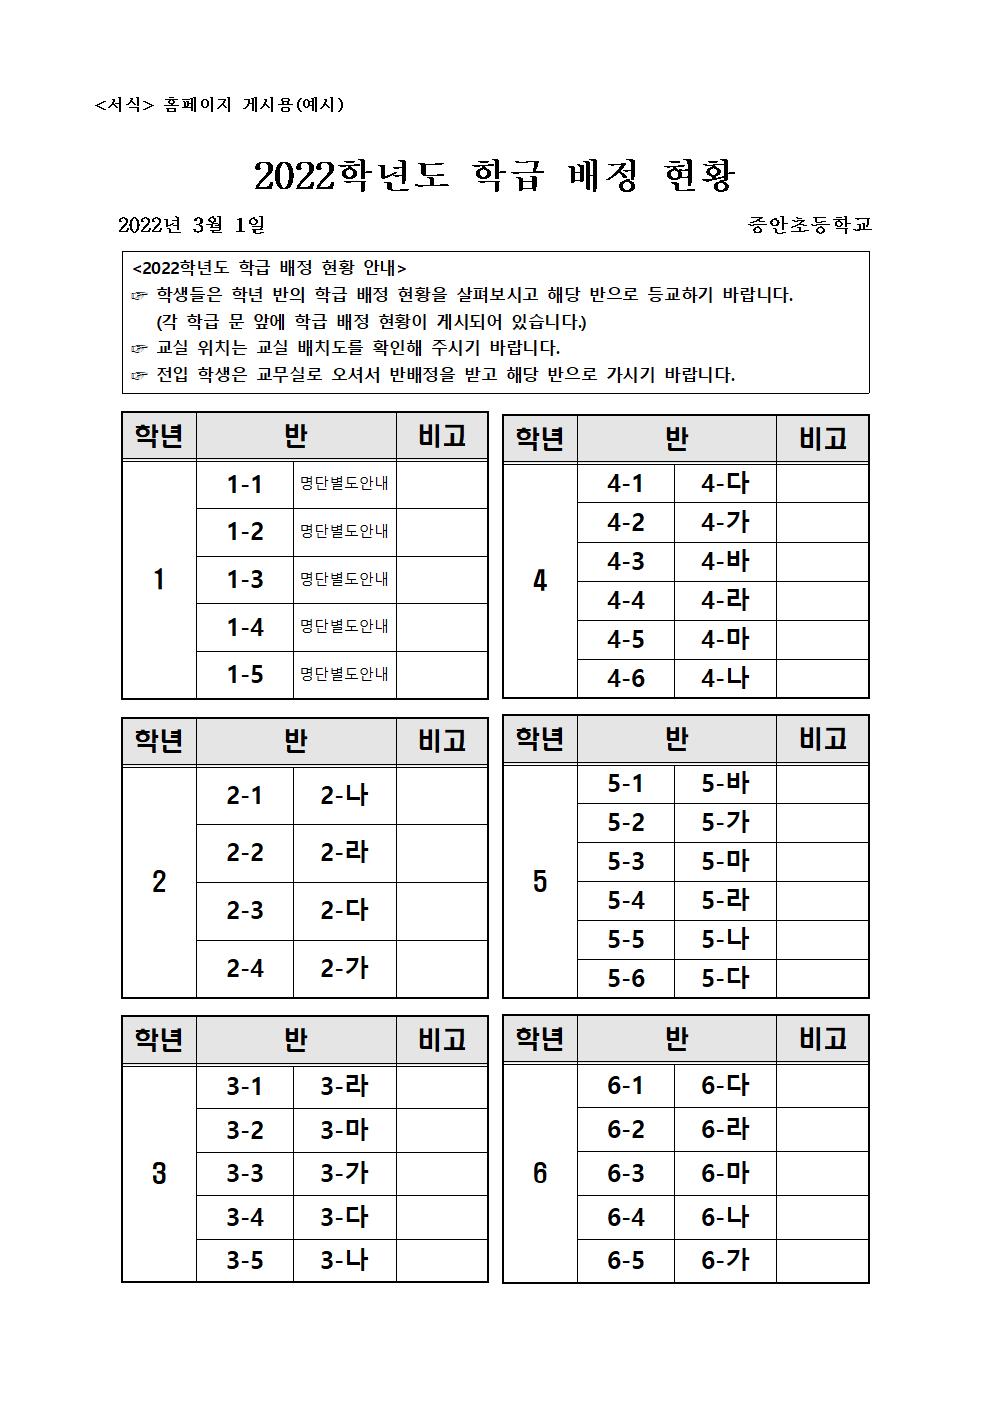 2022학년도 학급 배정 현황(2-6학년)-홈페이지용001